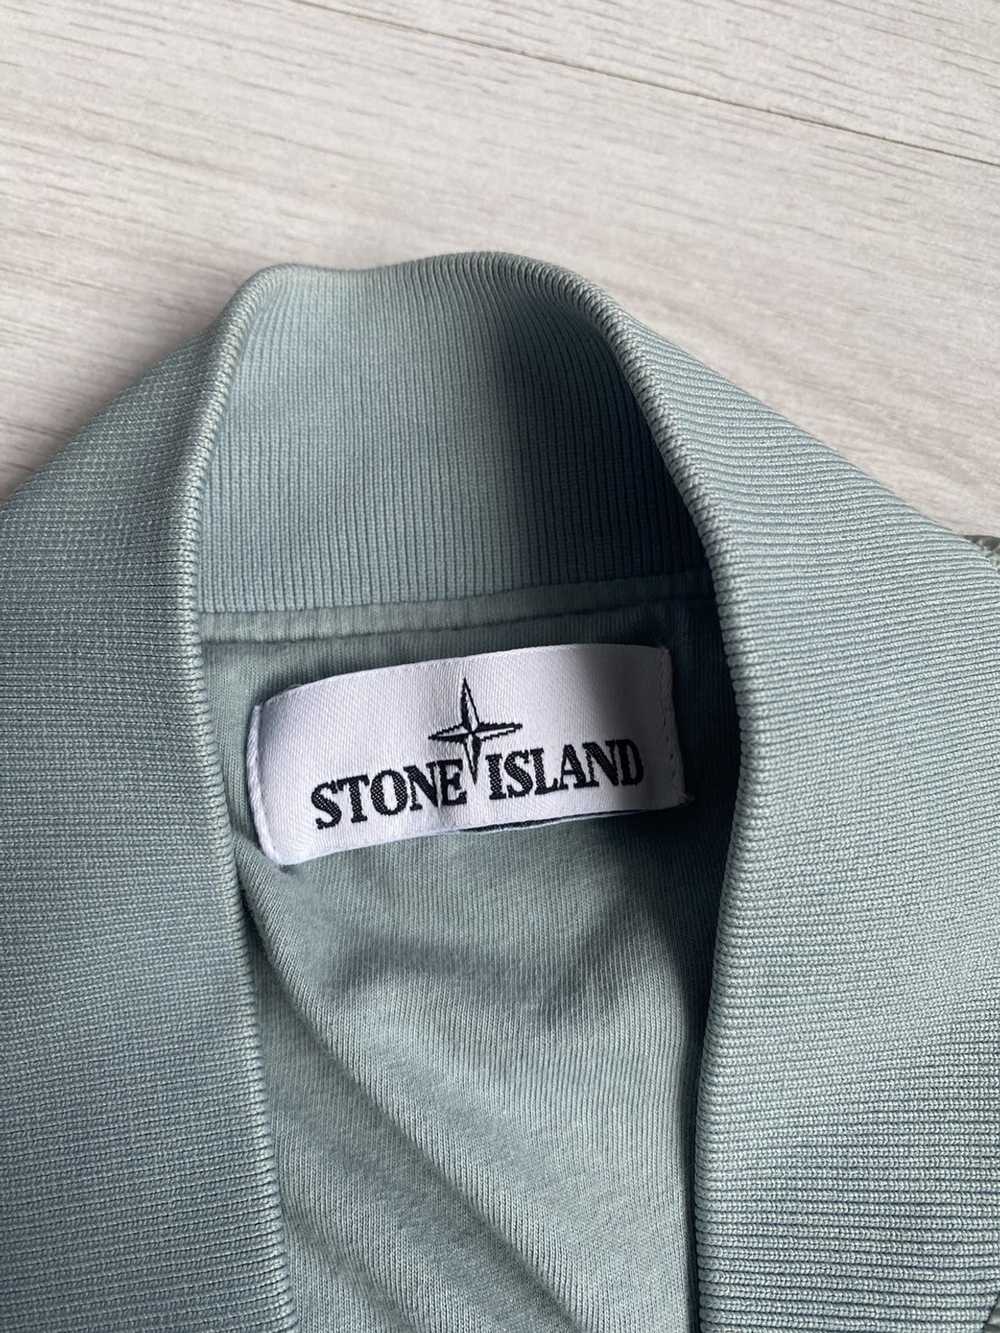 Stone Island Stone Island Reflective Jacket Garme… - image 4